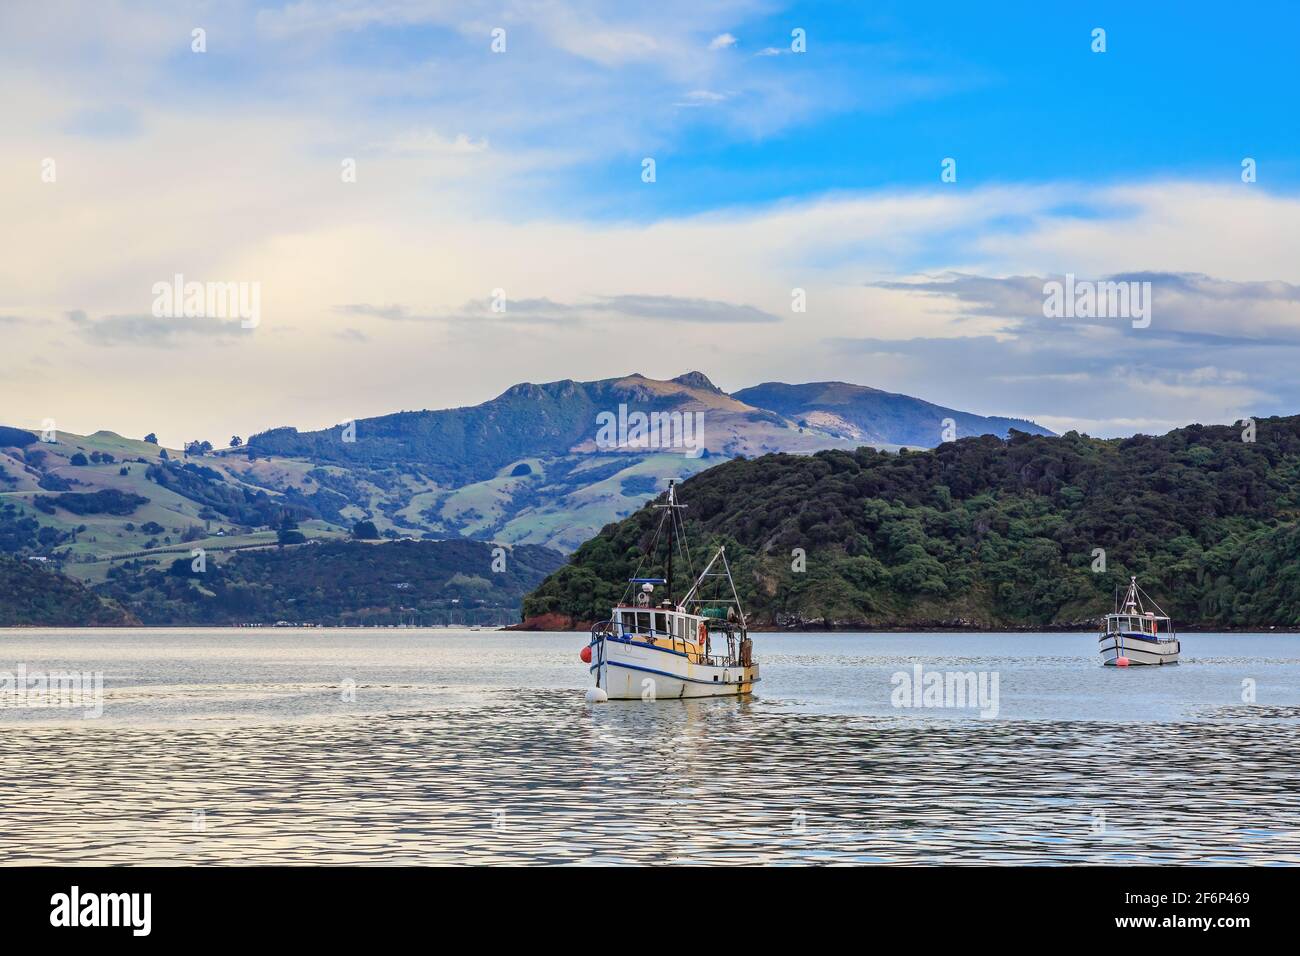 Bateaux de pêche dans le port d'Akaroa, en Nouvelle-Zélande, avec les montagnes de la péninsule de Banks en arrière-plan Banque D'Images